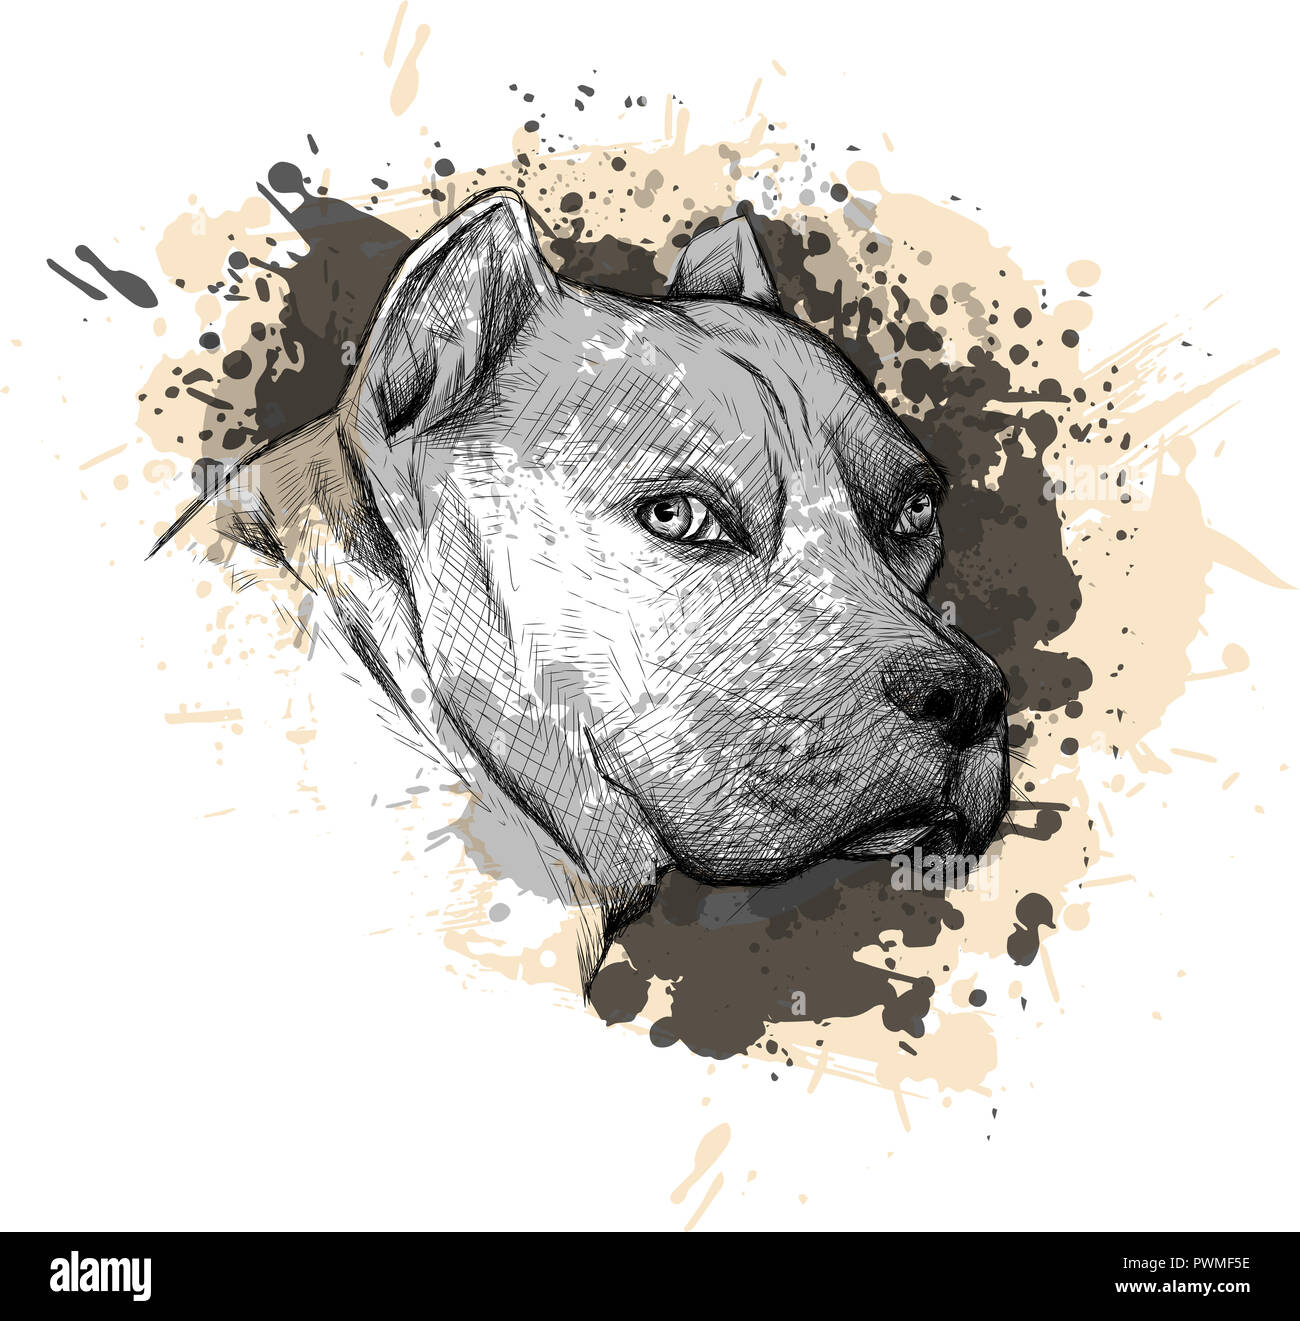 La raccolta degli animali: Cane. Ritratto di un Pitbull. Primo piano su uno sfondo bianco, con elementi di schizzare e vernice di gocciolamento. Foto Stock